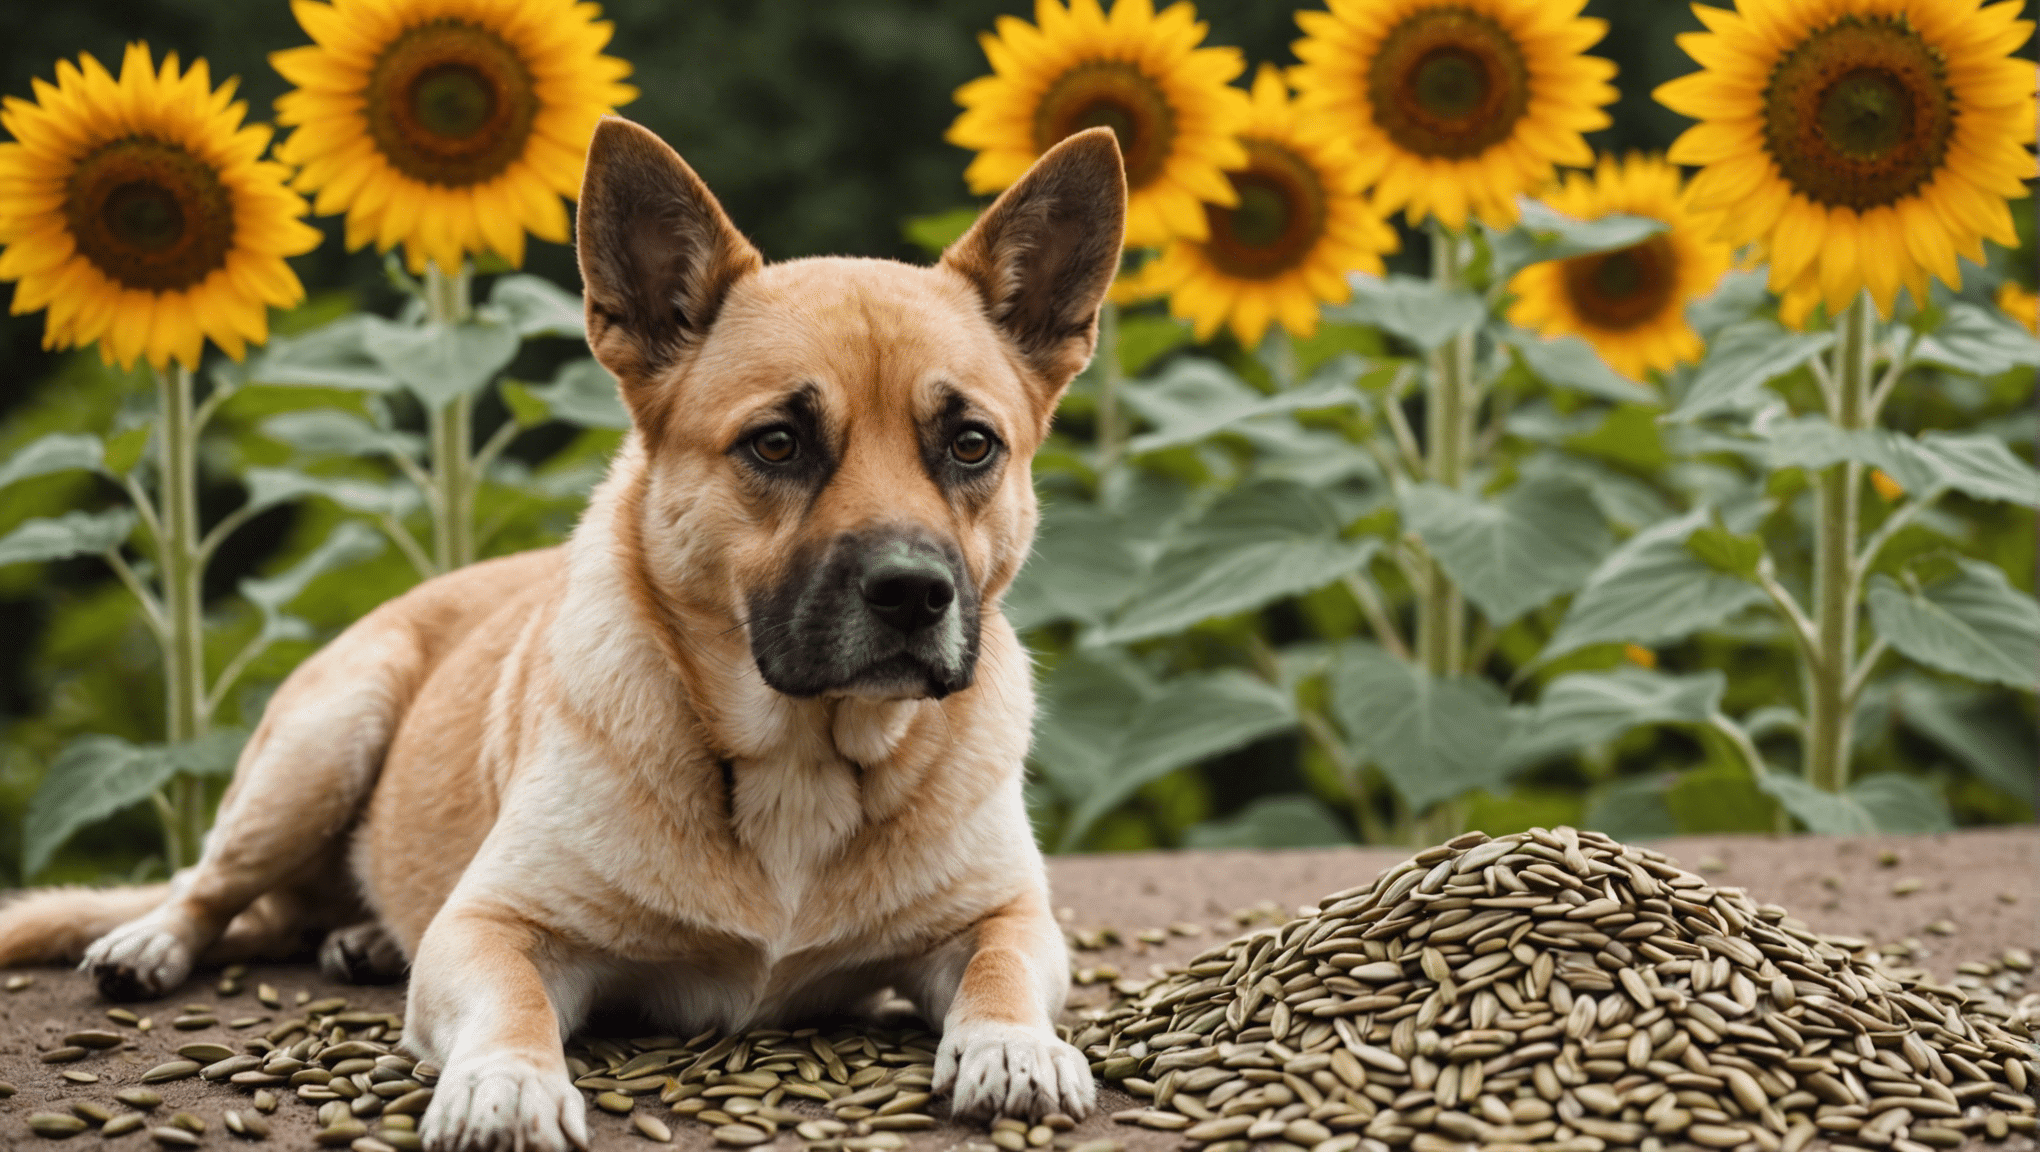 dowiedz się, czy nasiona słonecznika są bezpieczne dla psów i poznaj potencjalne ryzyko oraz korzyści dla Twojego psiego towarzysza.